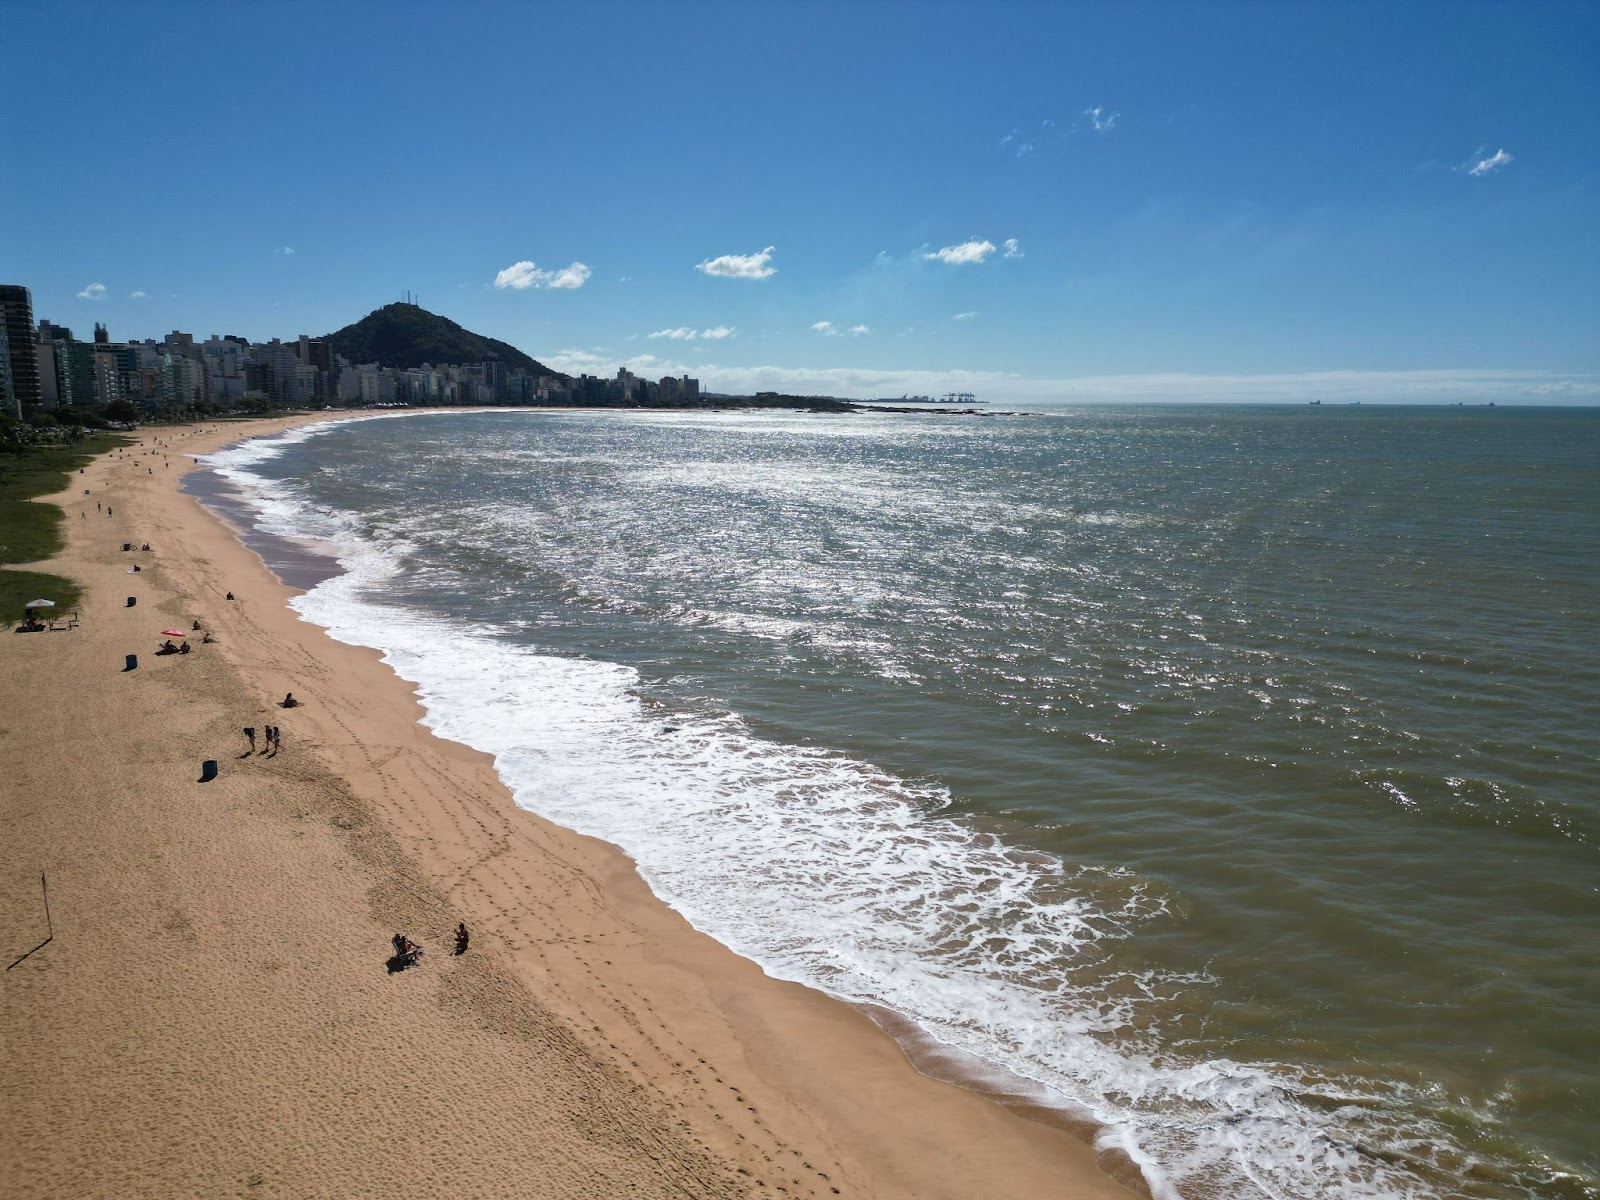 Vista aérea da Praia da Costa, com o mar ao lado direito da imagem em tom esverdeado, diferente do céu azul, chegando na extensa faixa de areia.